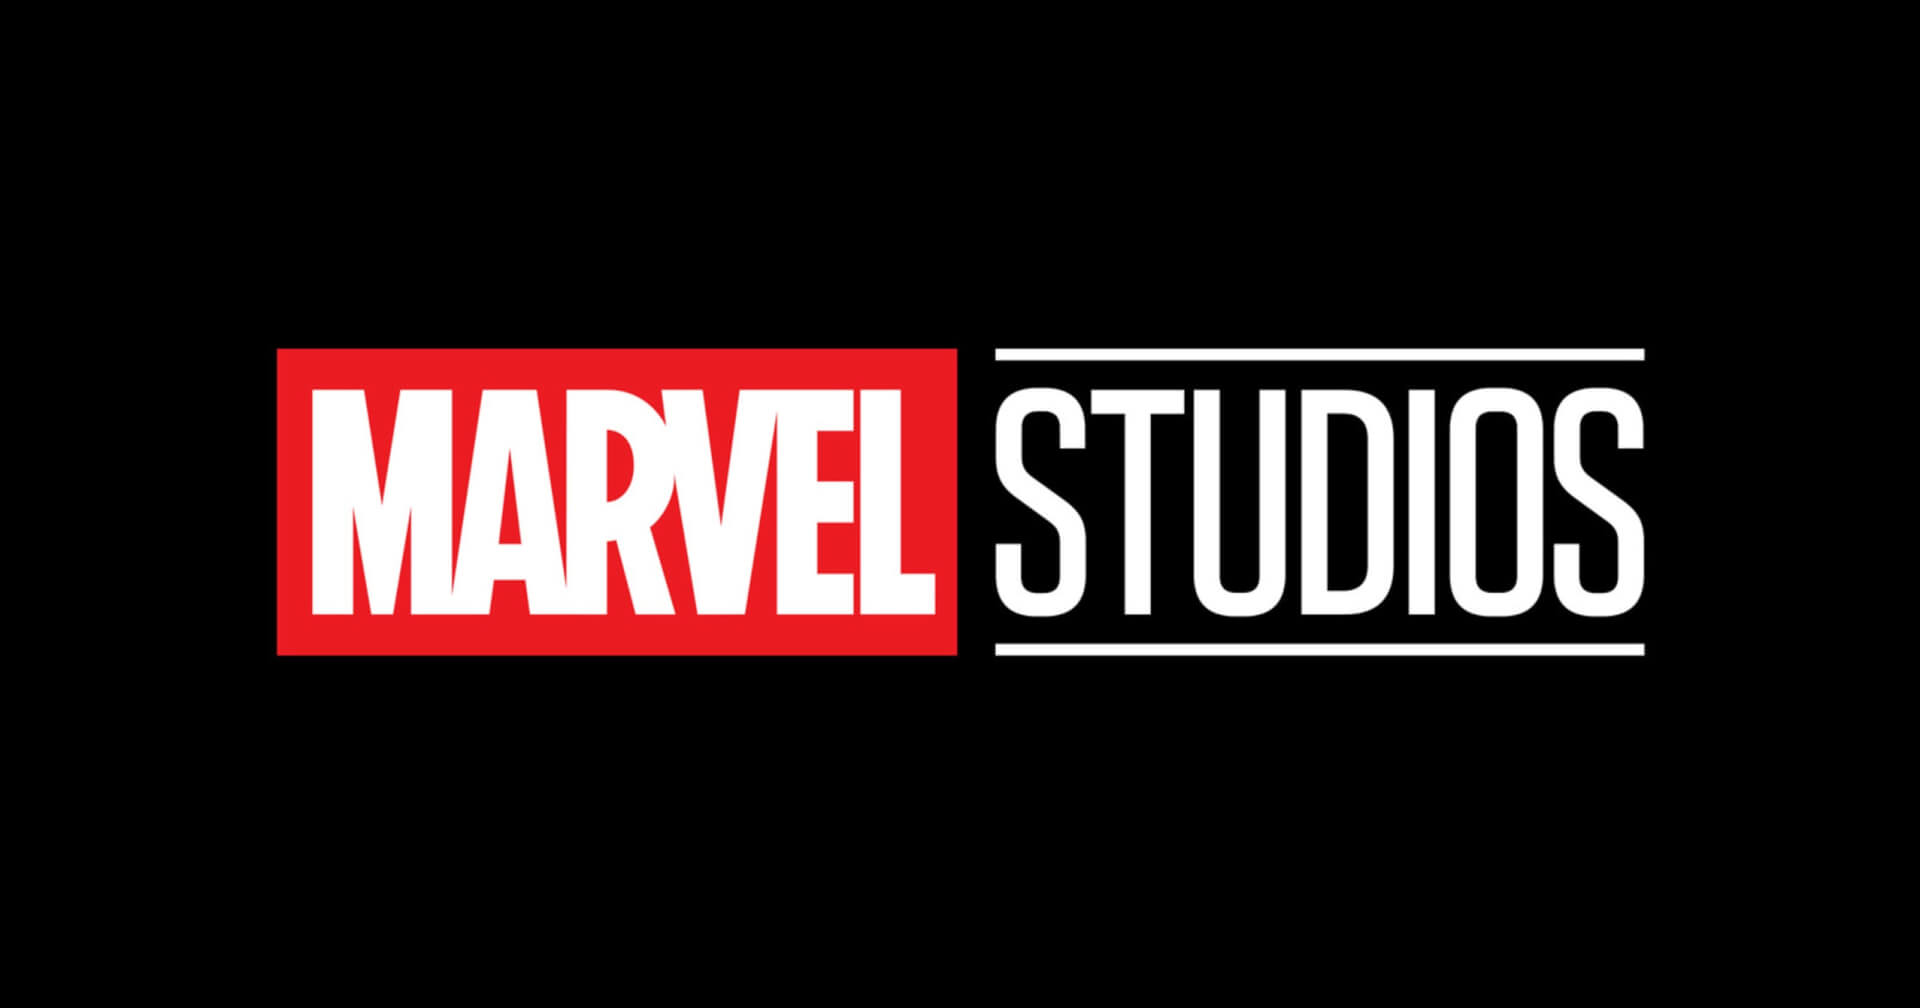 A Marvel Studios állítólag drasztikus változtatásokra készül az MCU 5. és 6. fázisában, mivel a mennyiség helyett a minőségen lesz a hangsúly